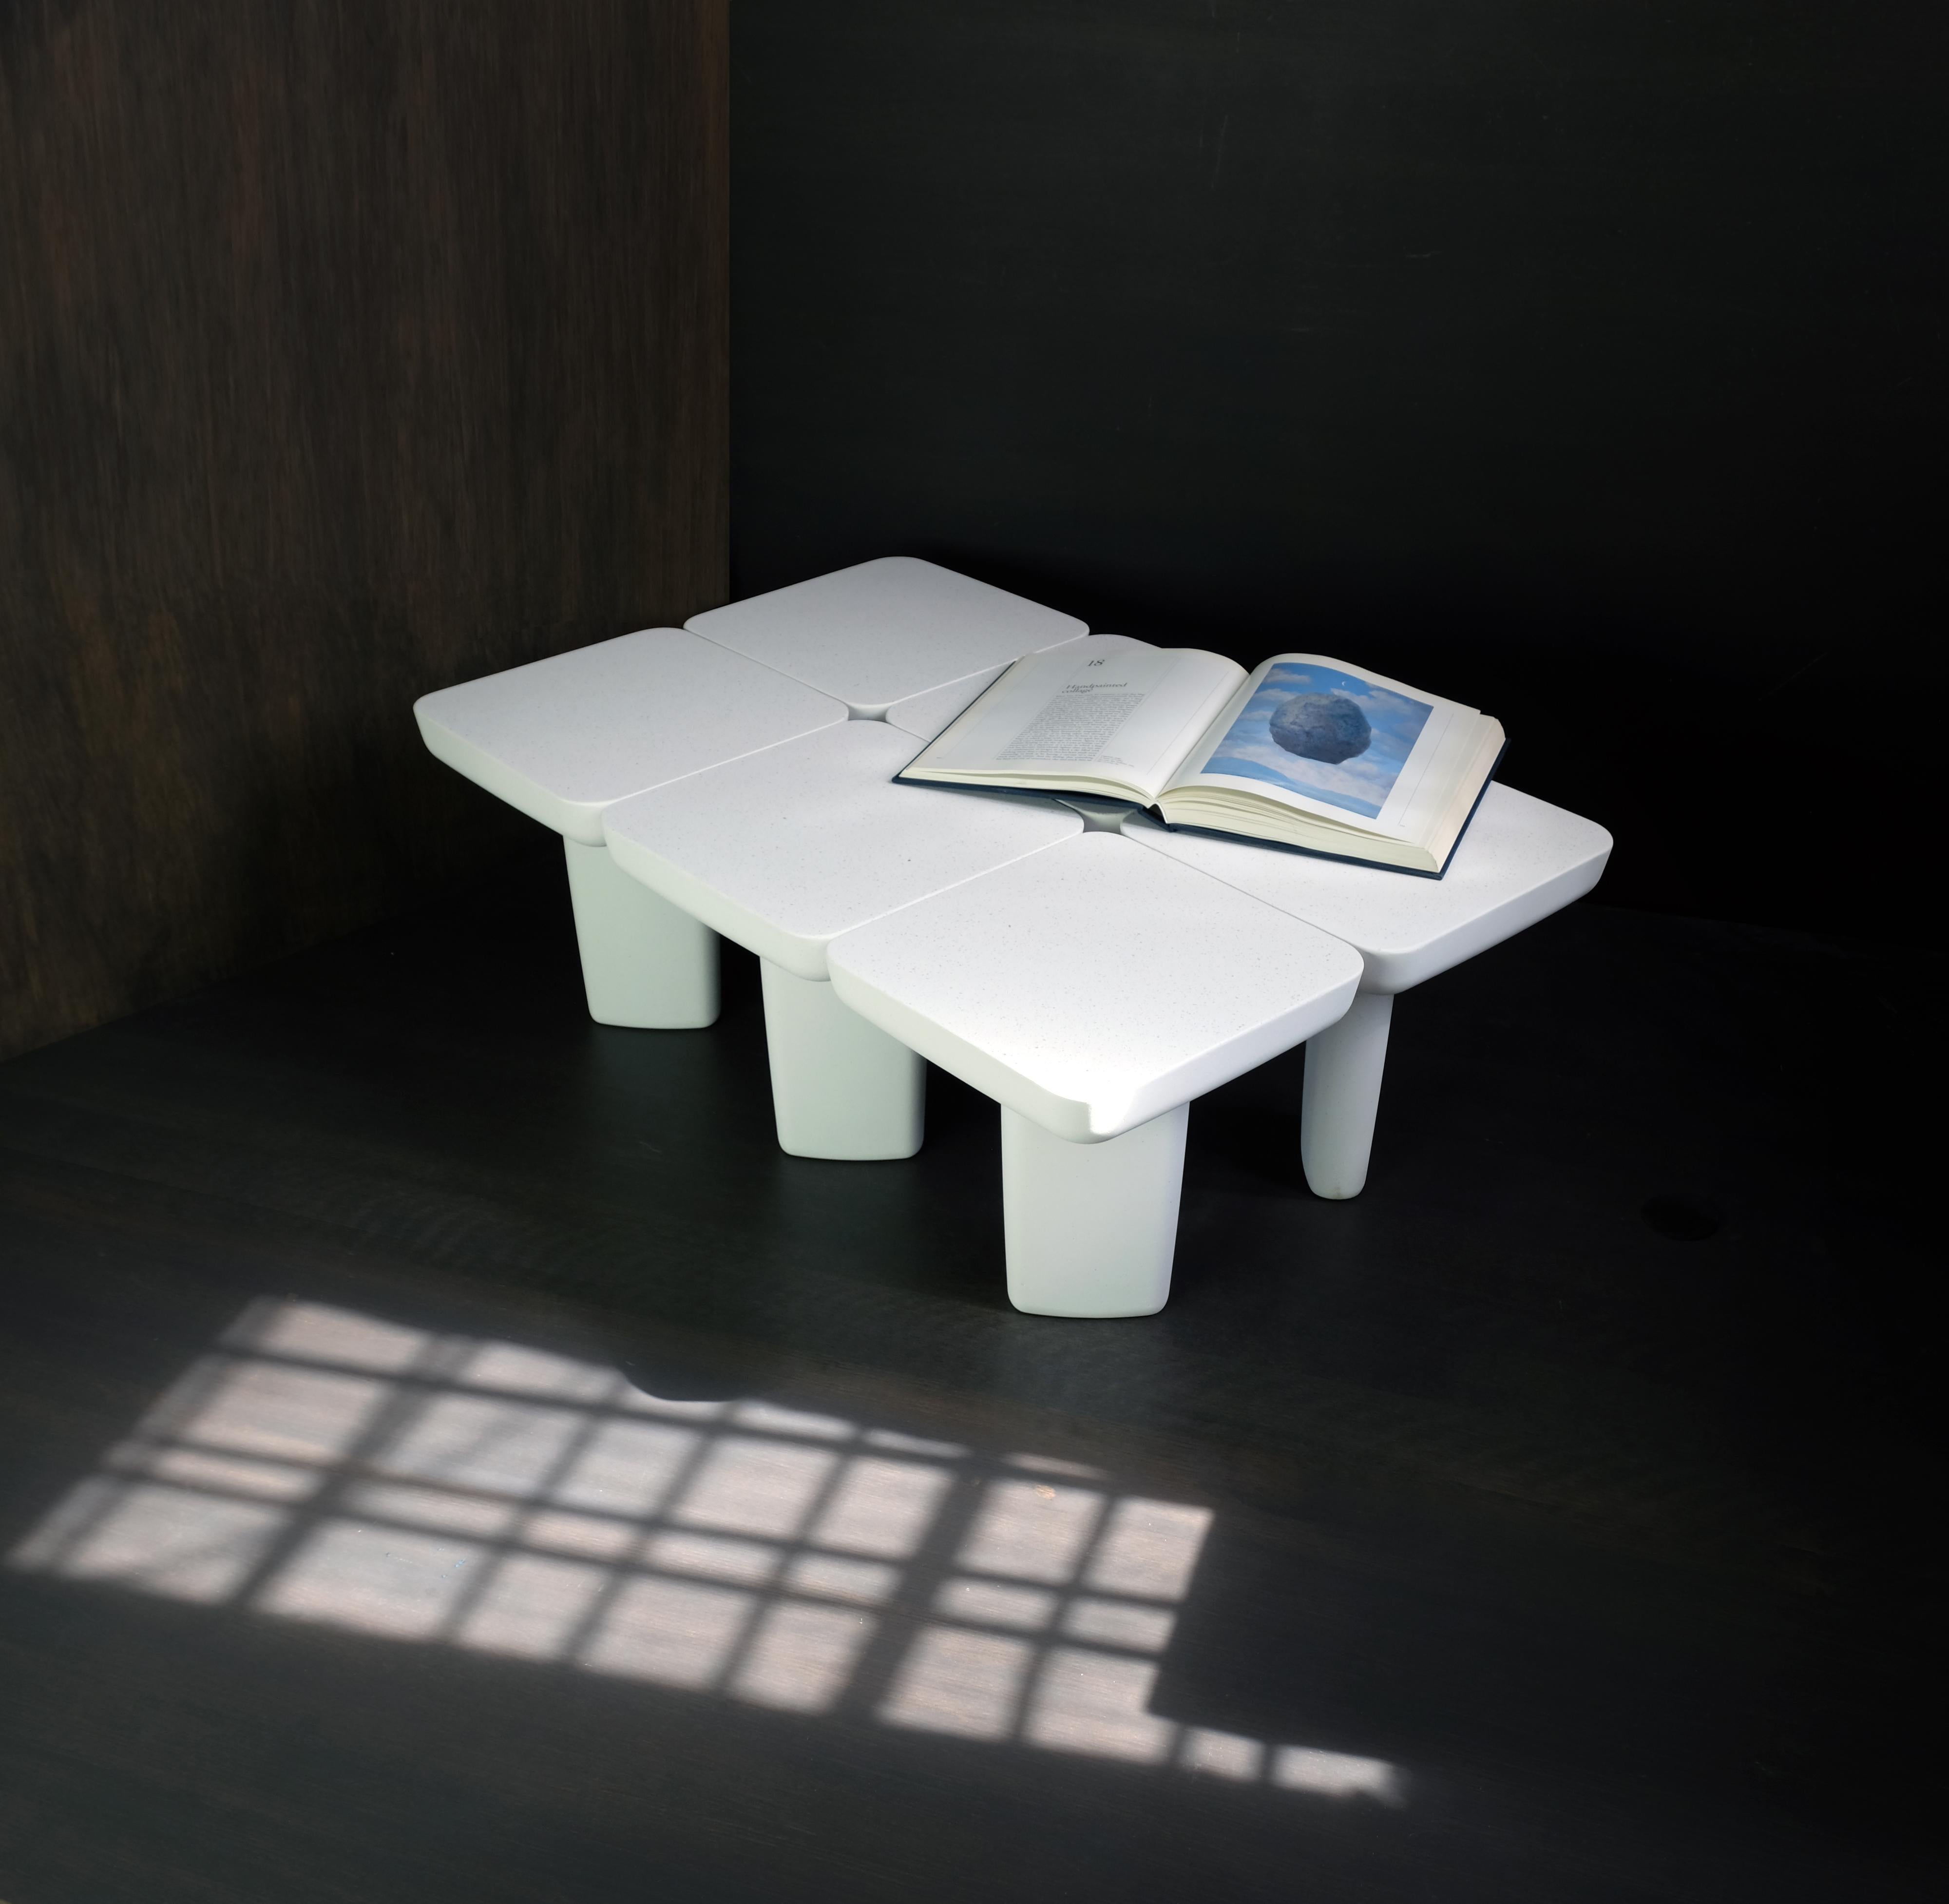 La MESA HOJA forma parte de nuestra colección de objetos monomateriales. Esta mesa baja sencilla y minimalista es a la vez humilde y atrevida, con un elegante sentido de la proporción y el equilibrio. 

Diseño: Alentes Atelier 
Material: Piedra